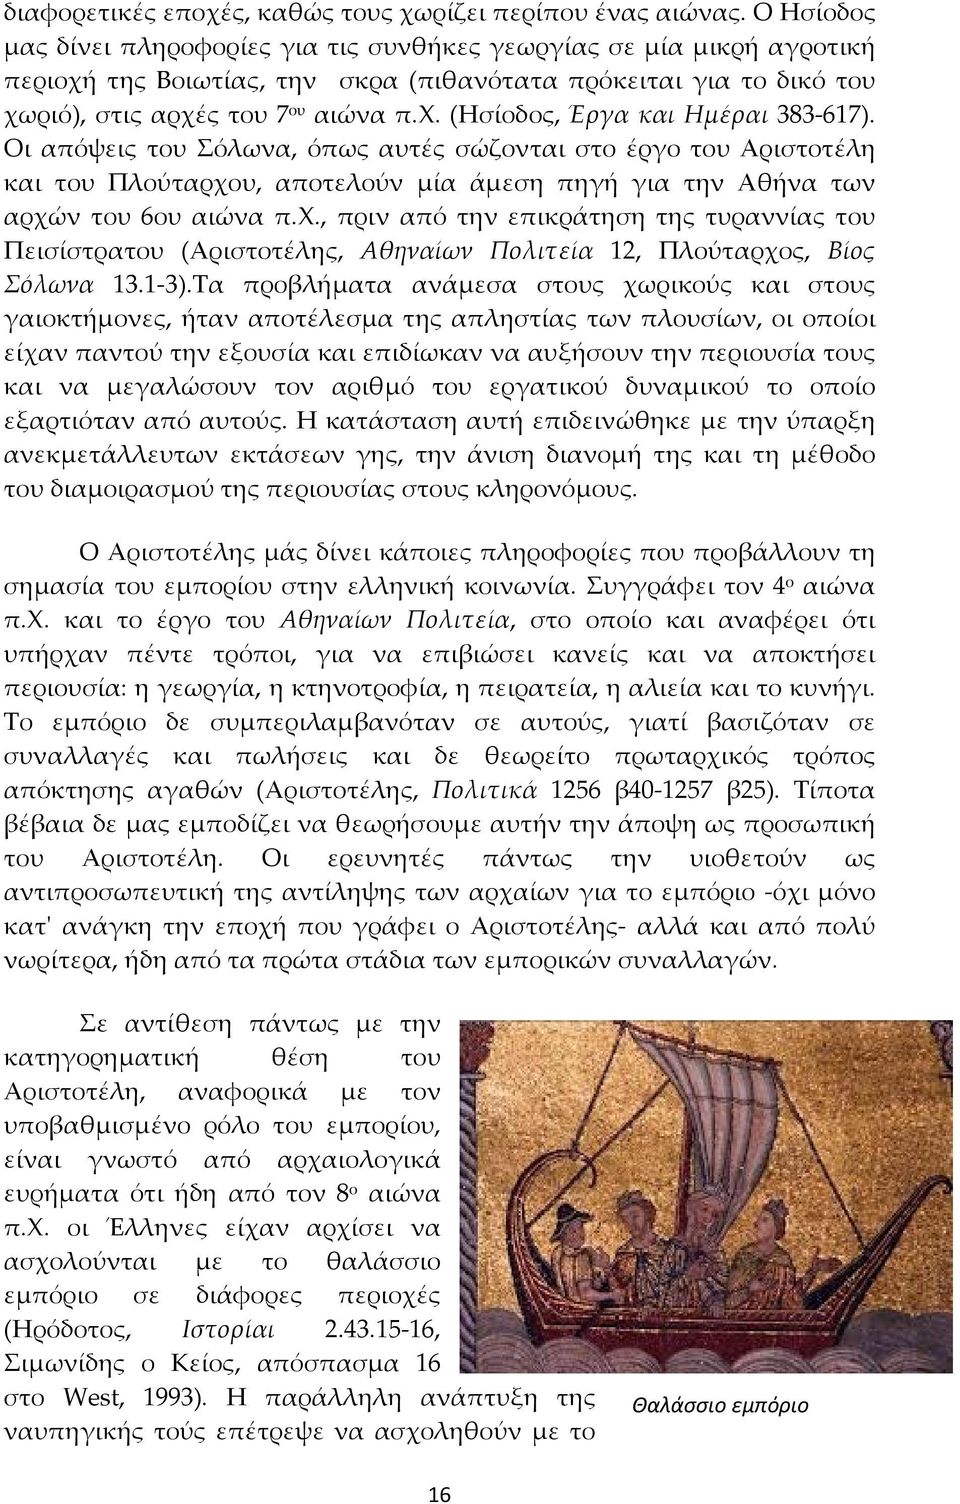 Οι απόψεις του Σόλωνα, όπως αυτές σώζονται στο έργο του Αριστοτέλη και του Πλούταρχο